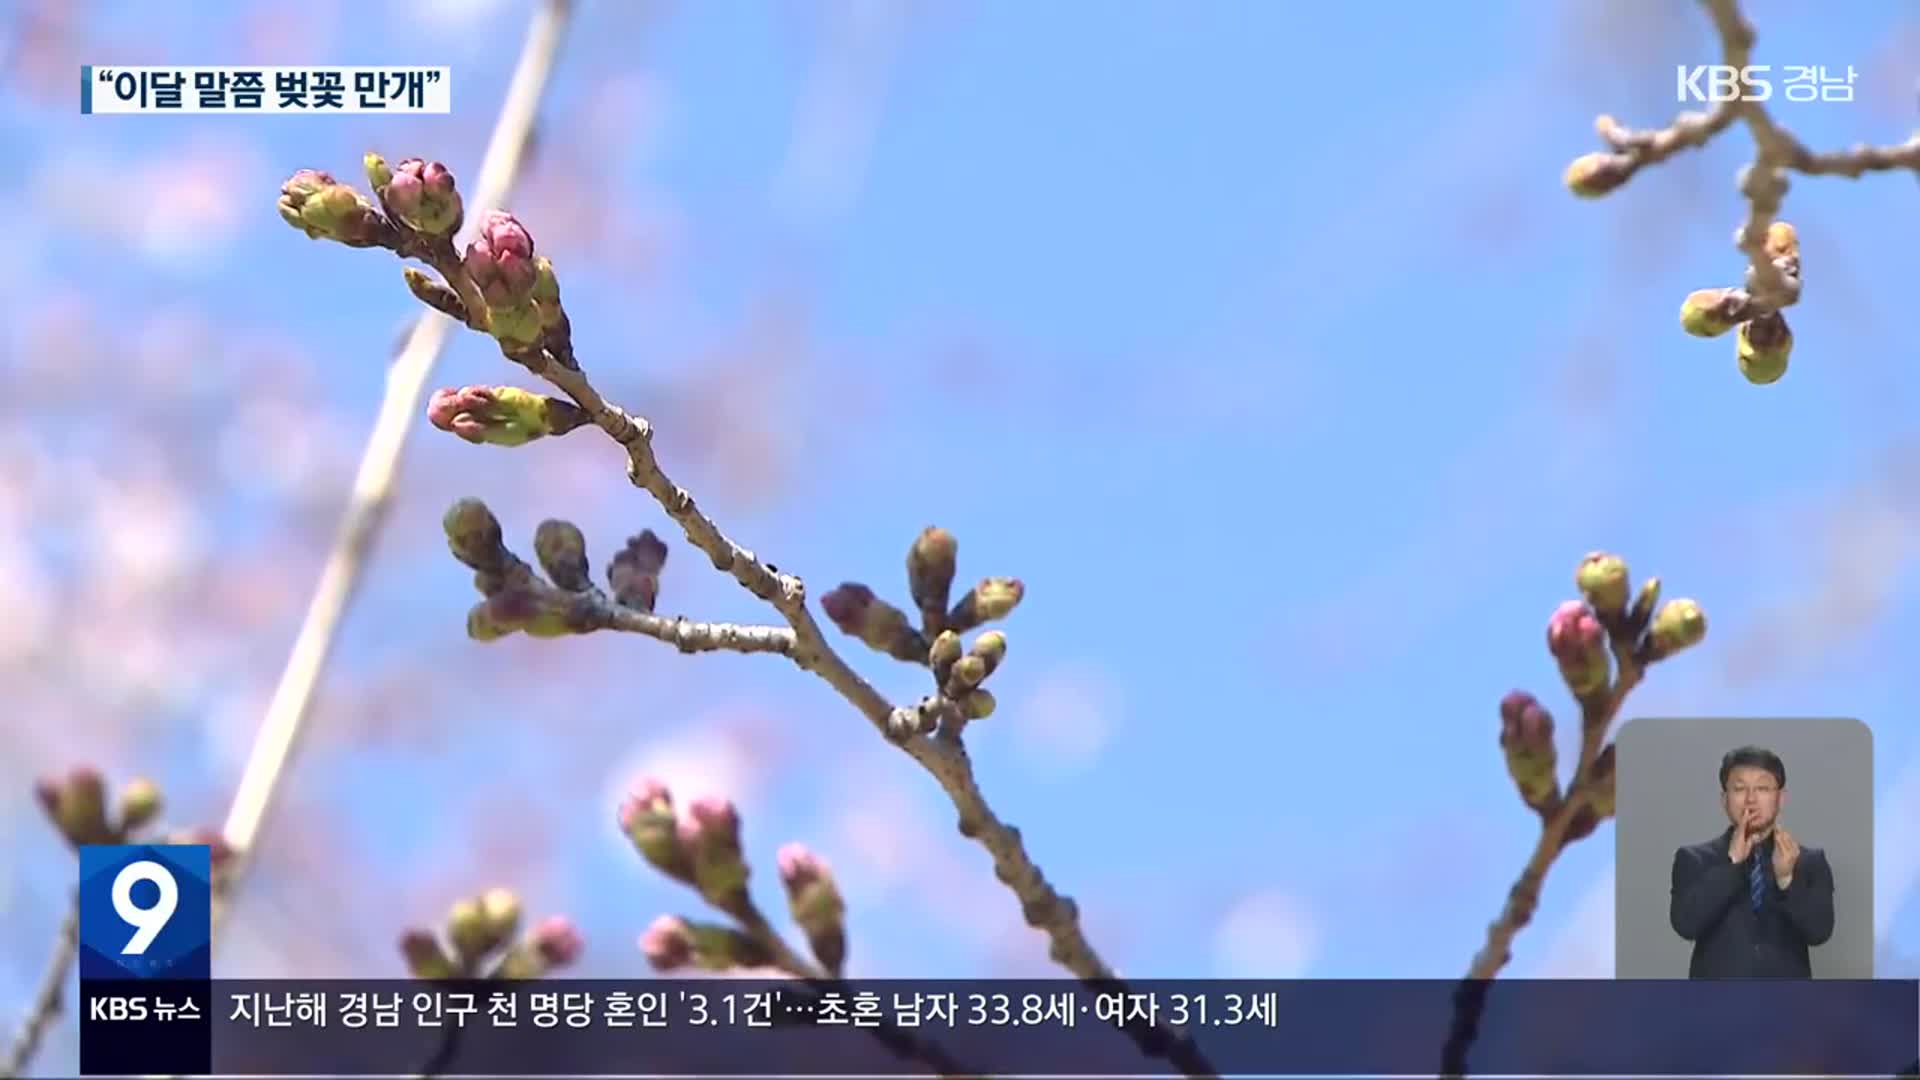 “벚나무야 힘내” 개화율 5%…축제 기간 연장 검토